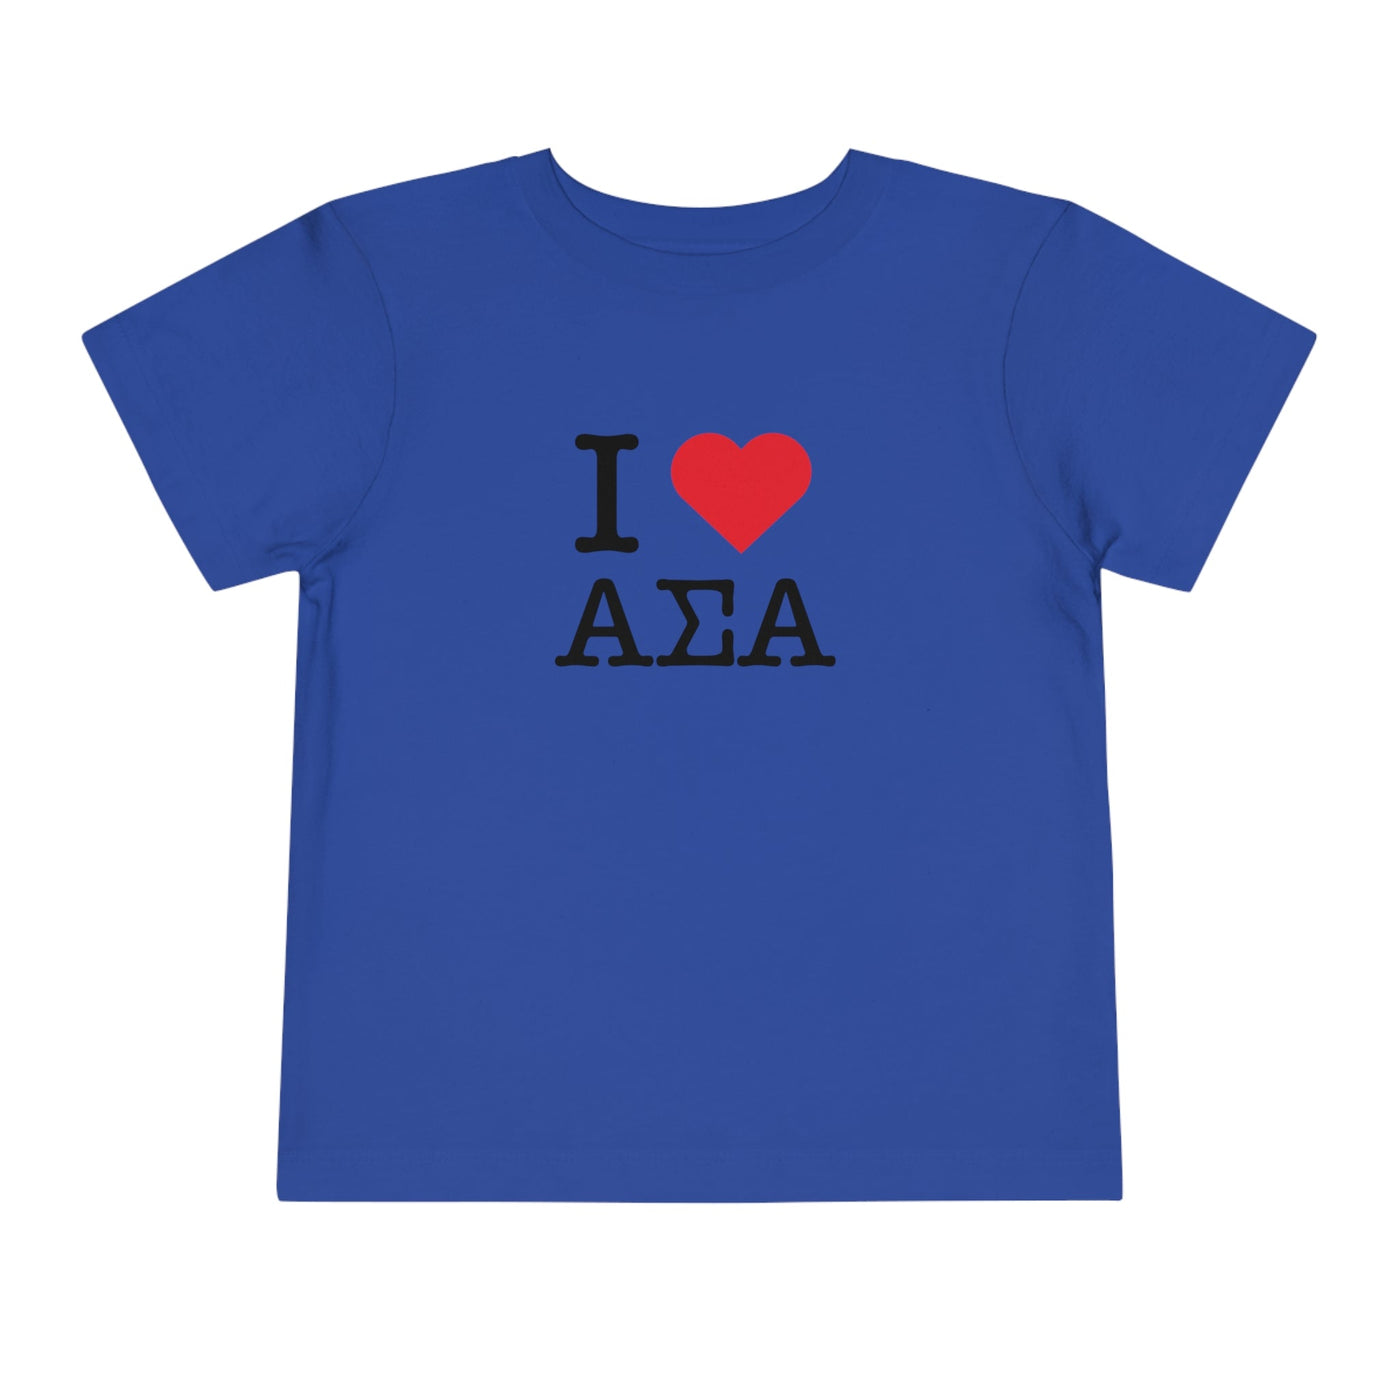 Alpha Sigma Alpha I Heart NY Sorority Baby Tee Crop Top